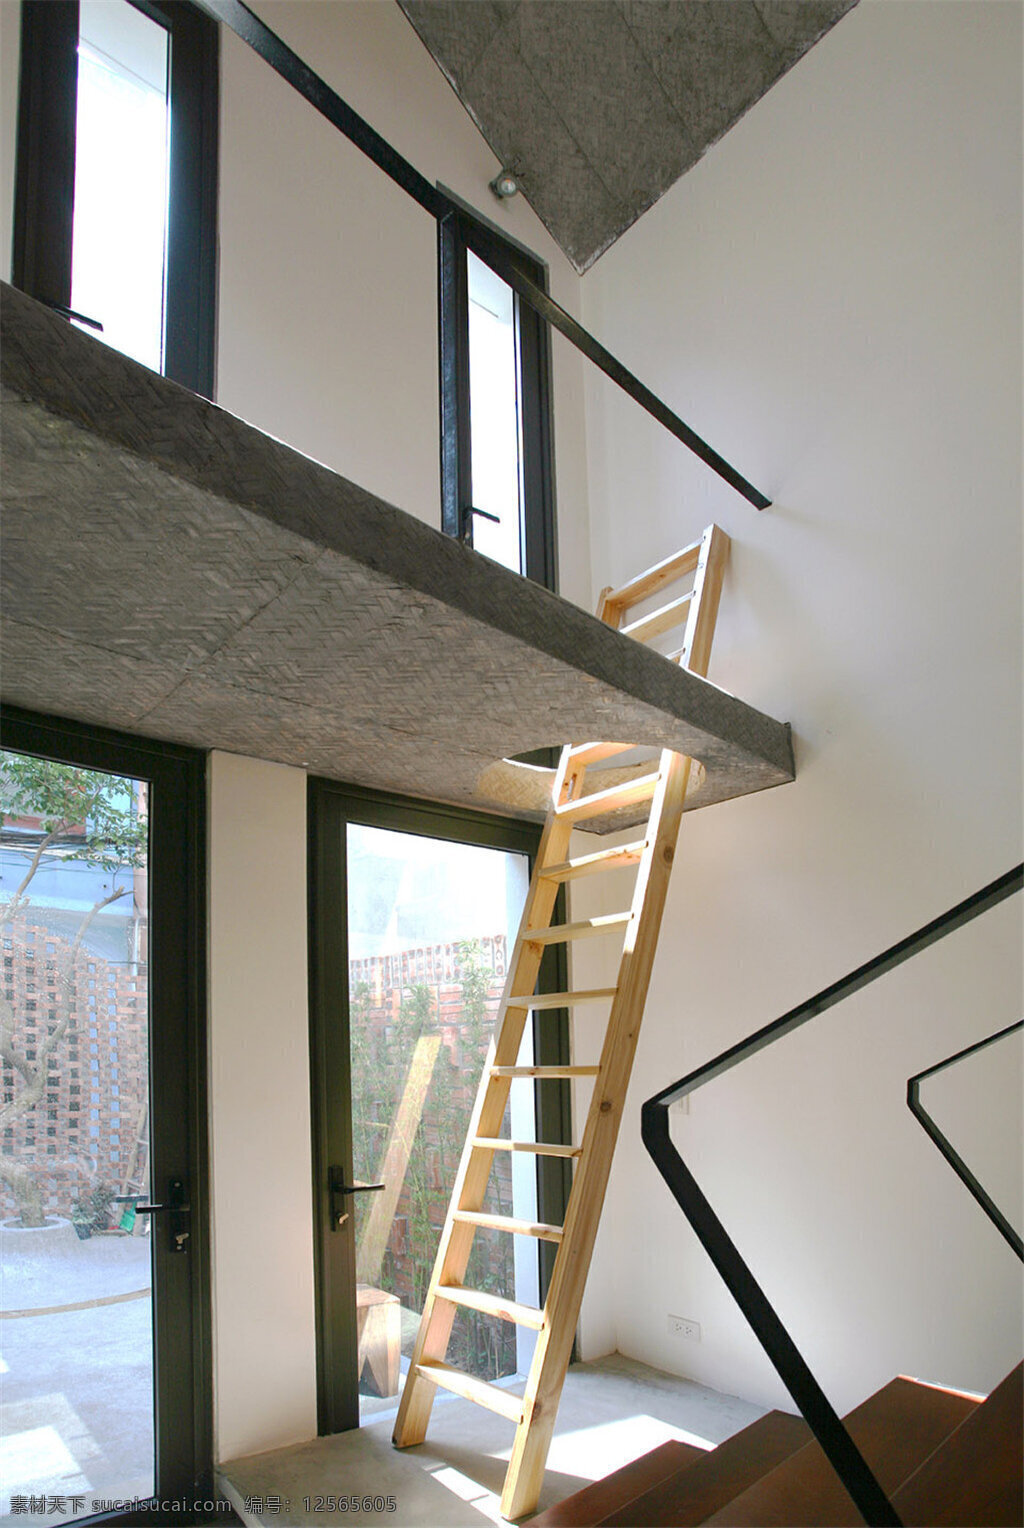 小 户型 室内 创意 楼梯 设计图 家居 家居生活 室内设计 装修 家具 装修设计